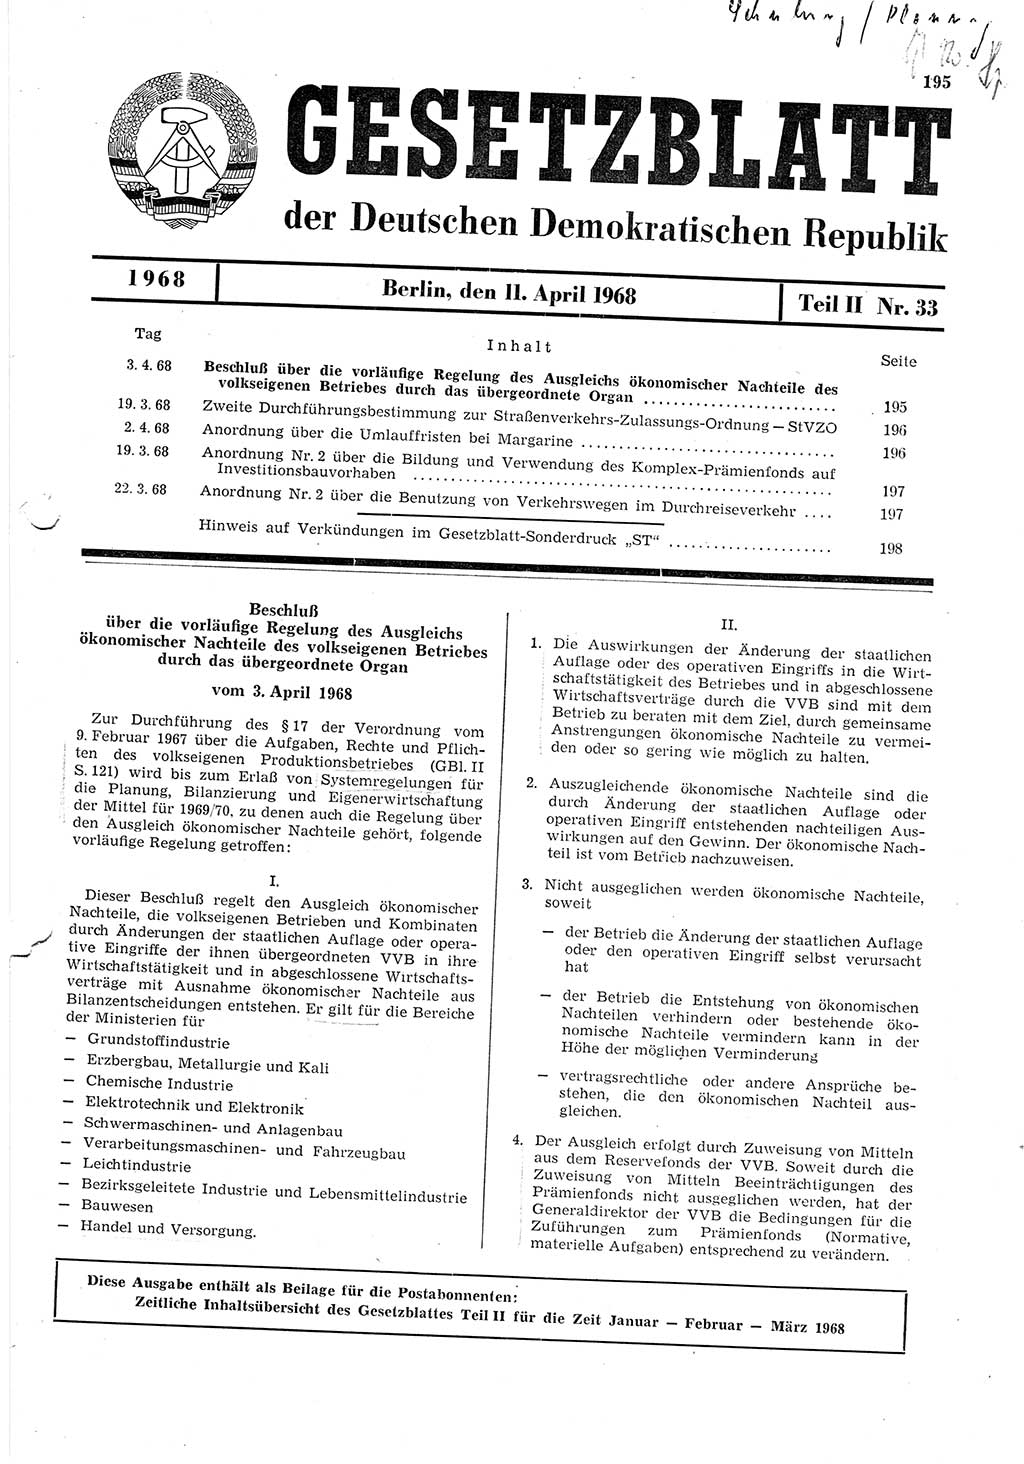 Gesetzblatt (GBl.) der Deutschen Demokratischen Republik (DDR) Teil ⅠⅠ 1968, Seite 195 (GBl. DDR ⅠⅠ 1968, S. 195)